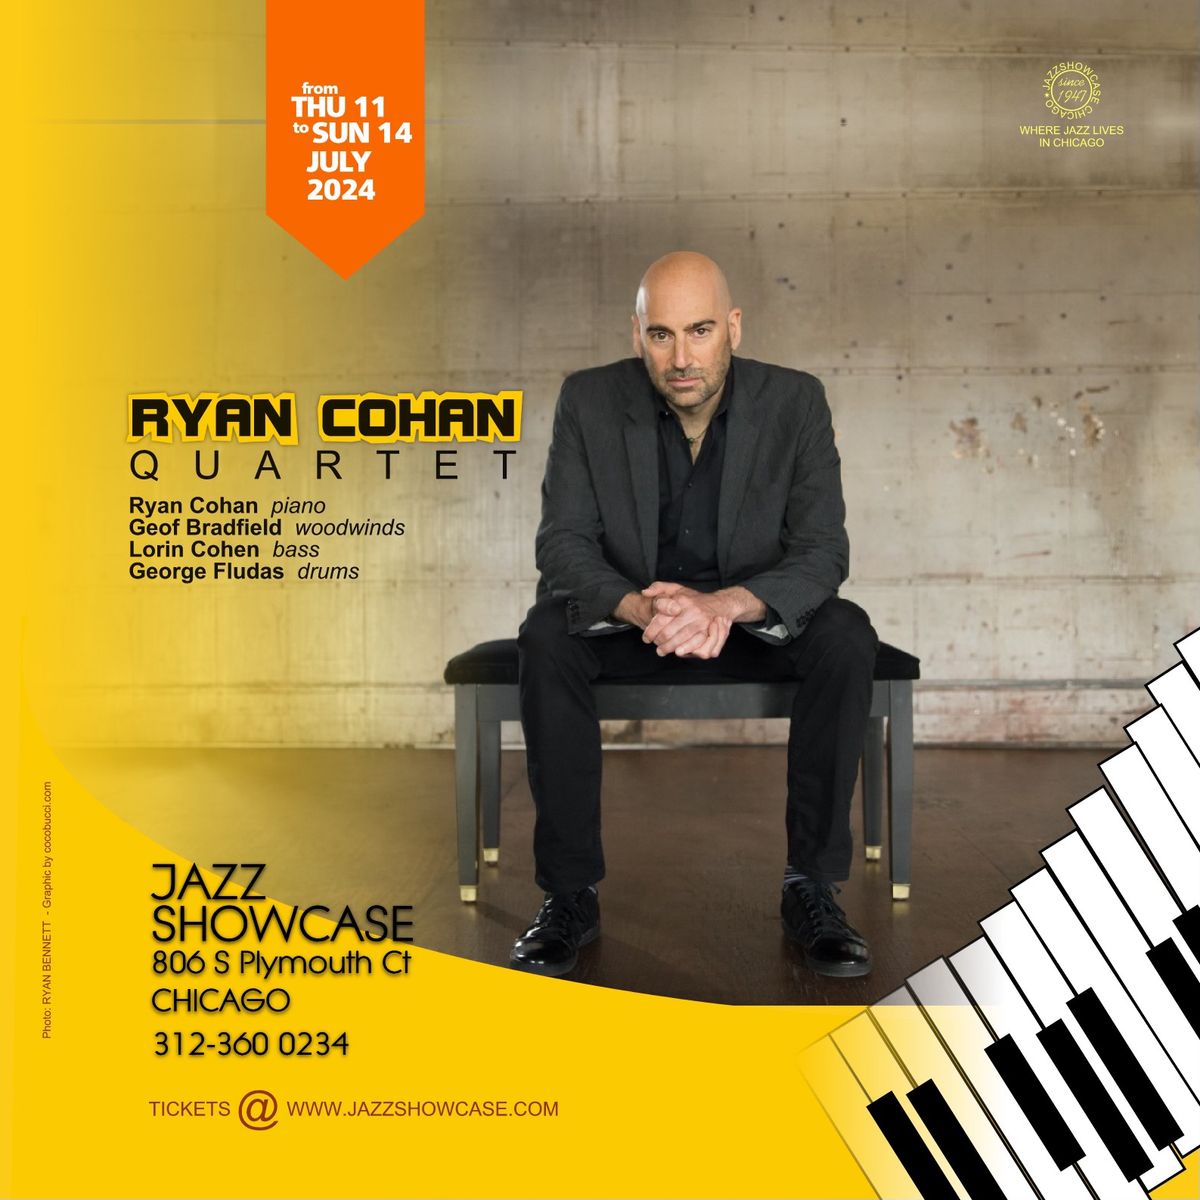 Ryan Cohan Quartet at Jazz Showcase